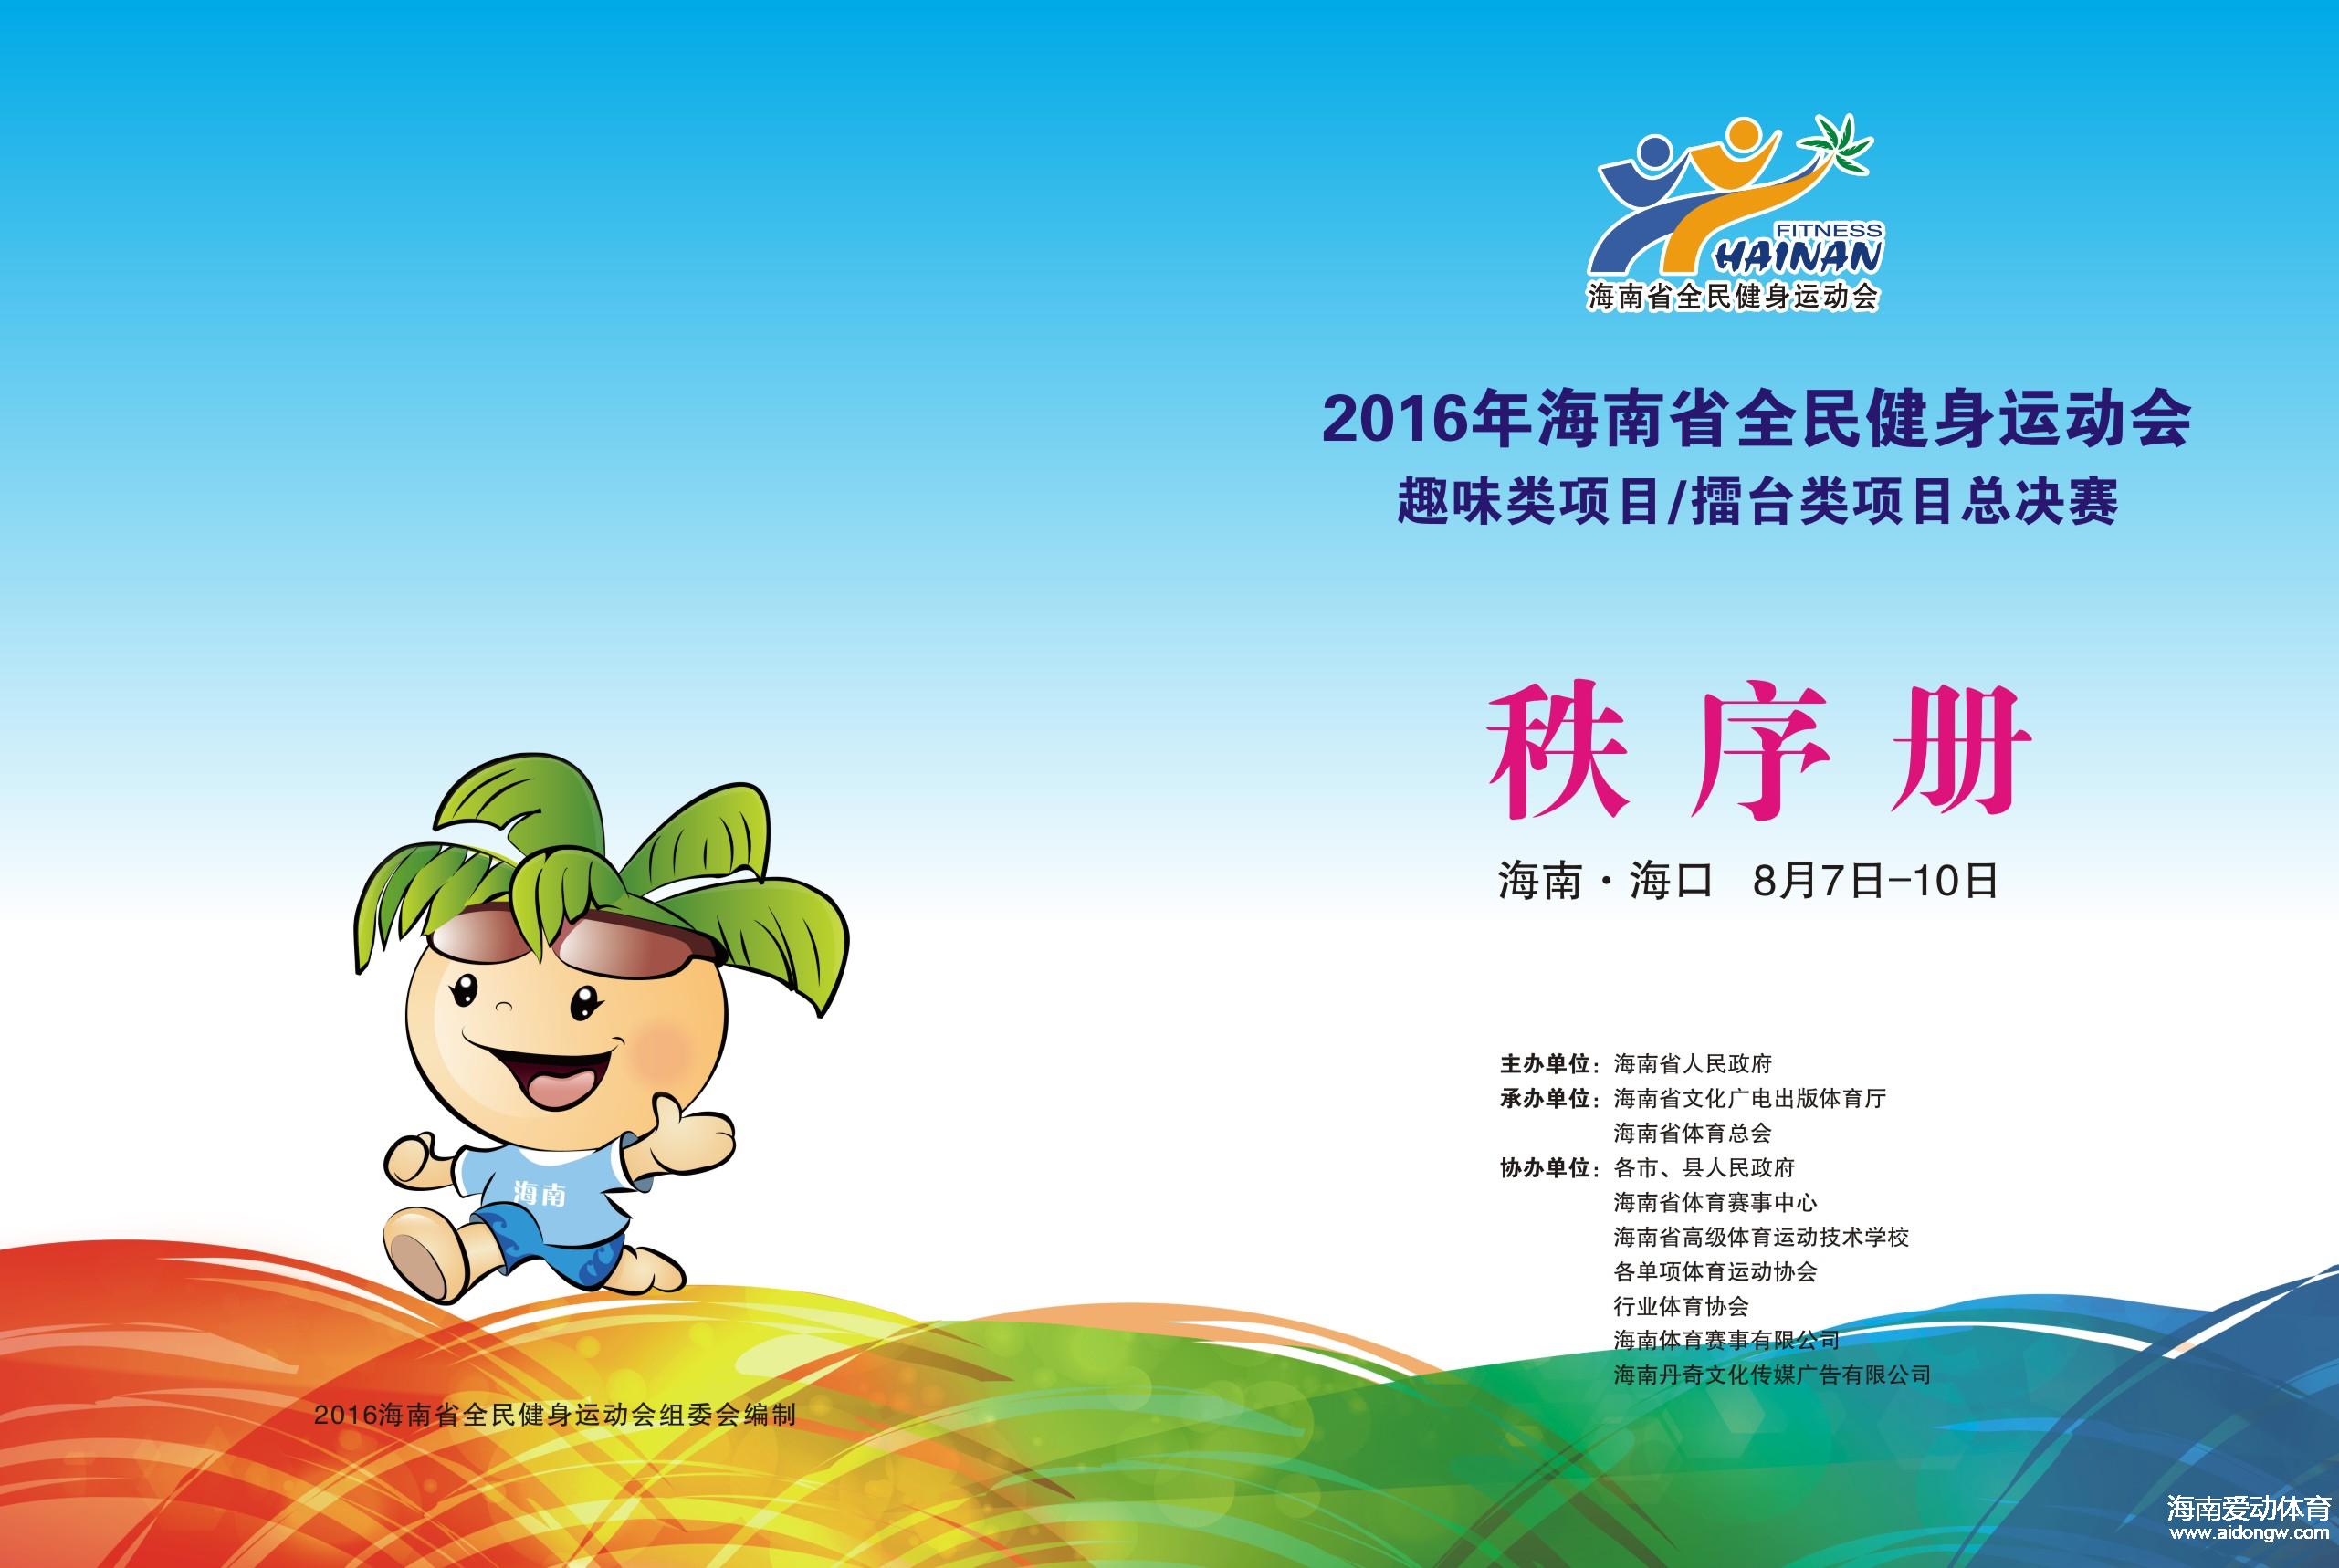 2016年海南省全民健身运动会《秩序册》